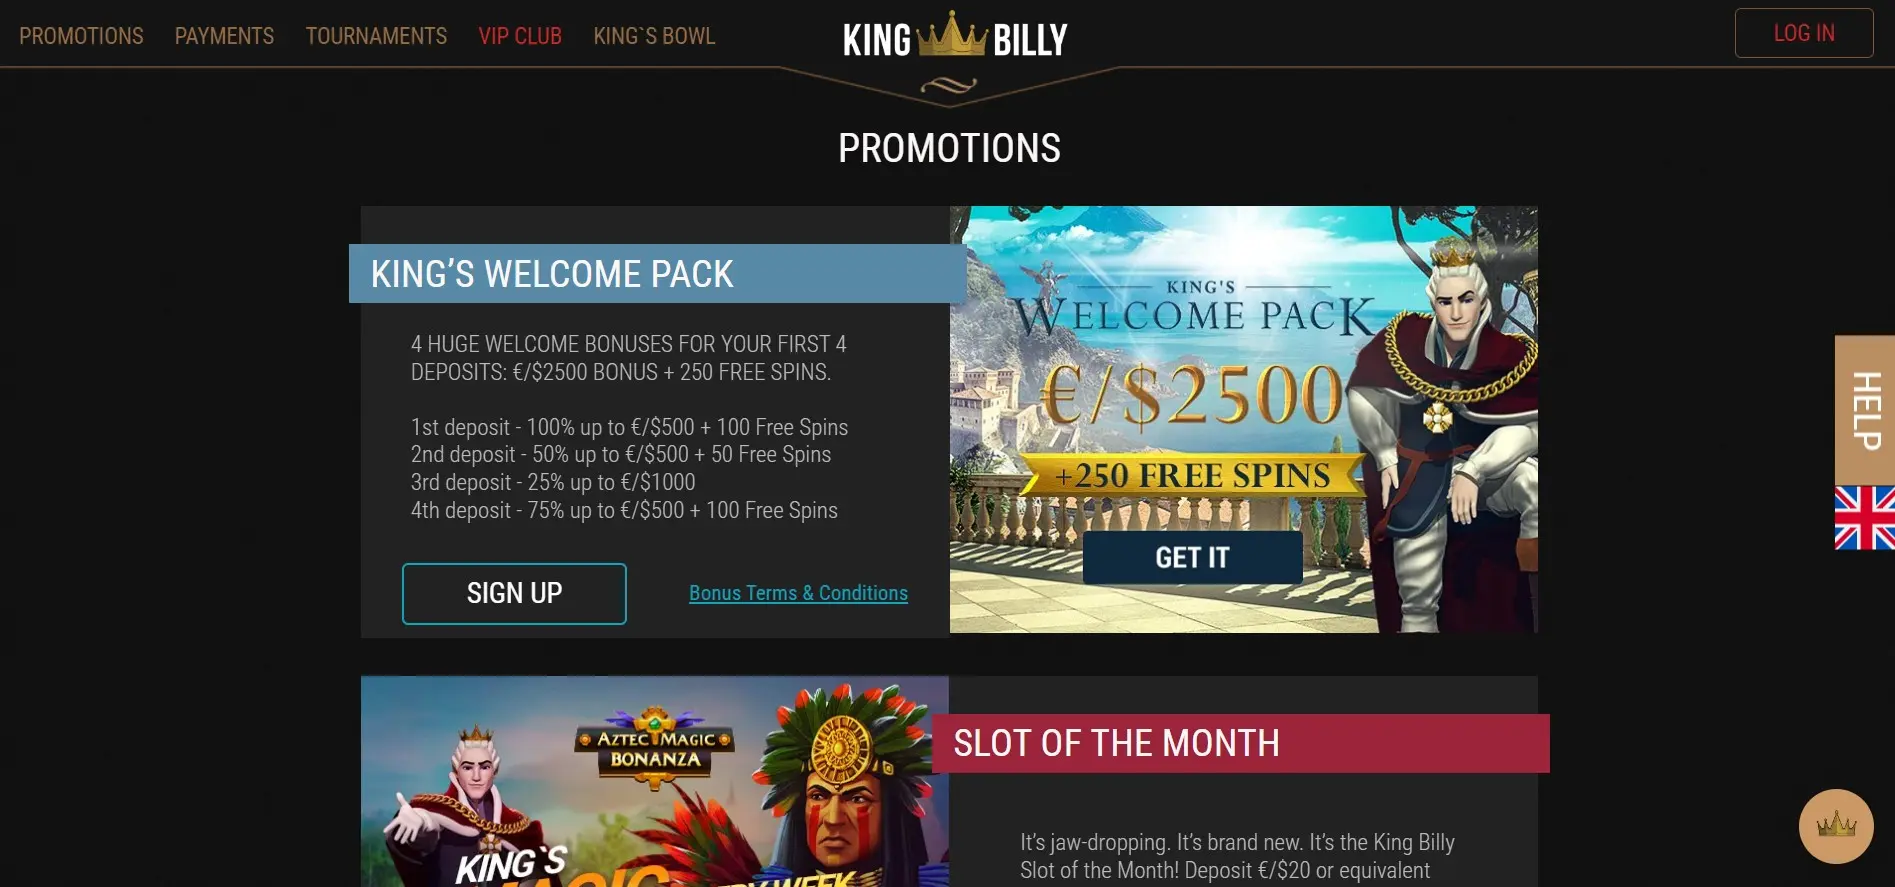 King Billy casino welcome bonus